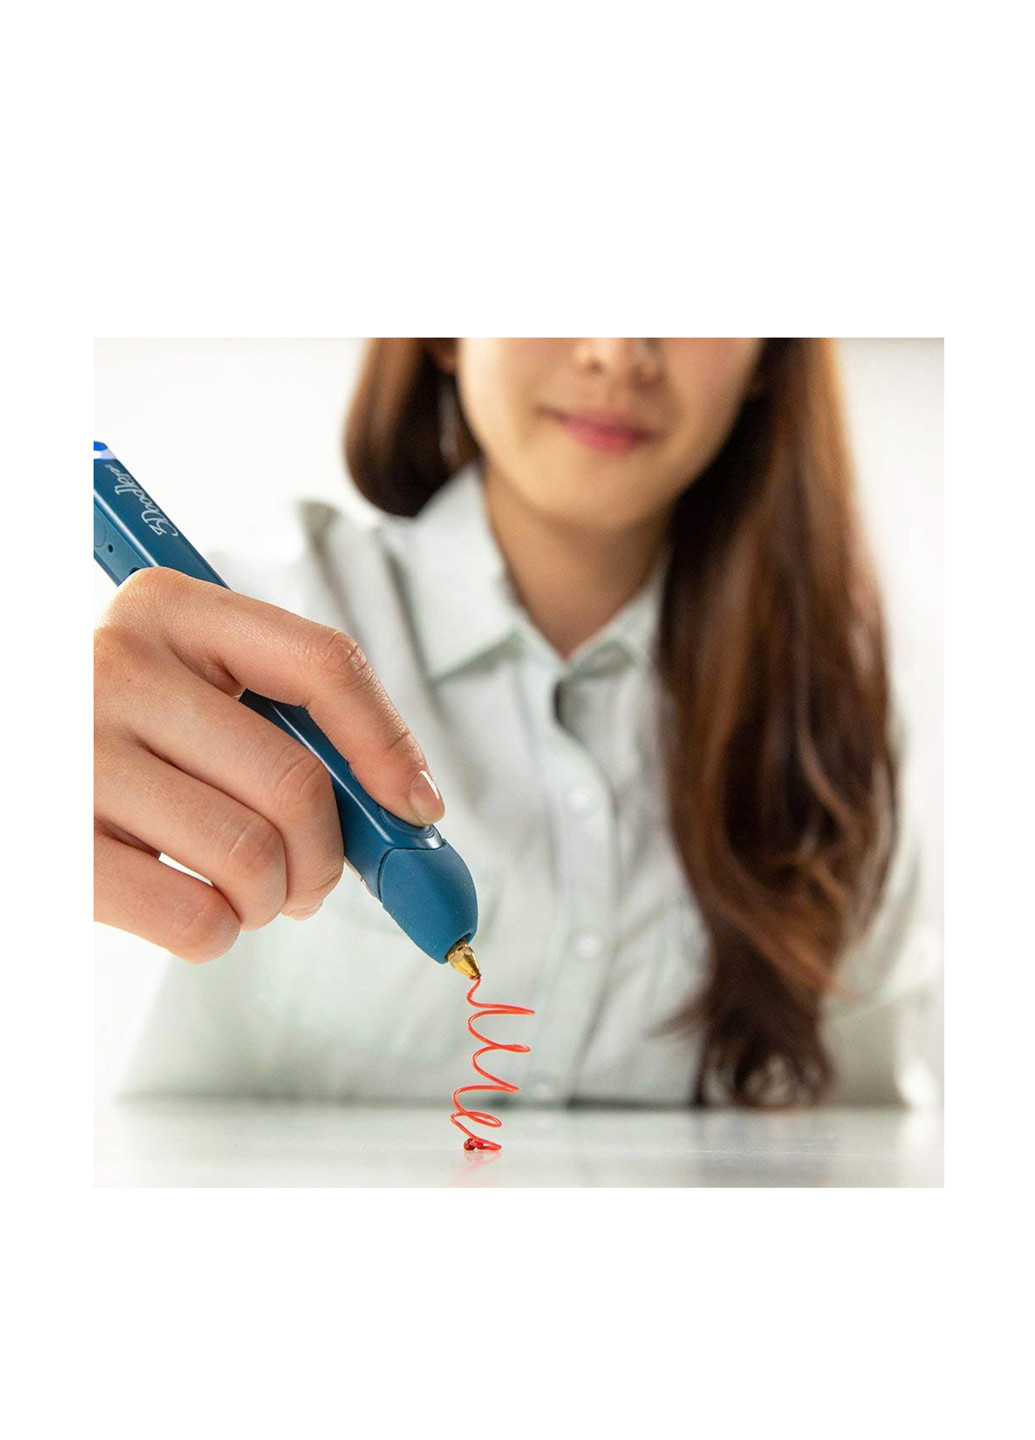 3D-ручка PLUS для проф. использования - СИНЯЯ (75 cтержней, аксессуары) 3Doodler Create (137282507)